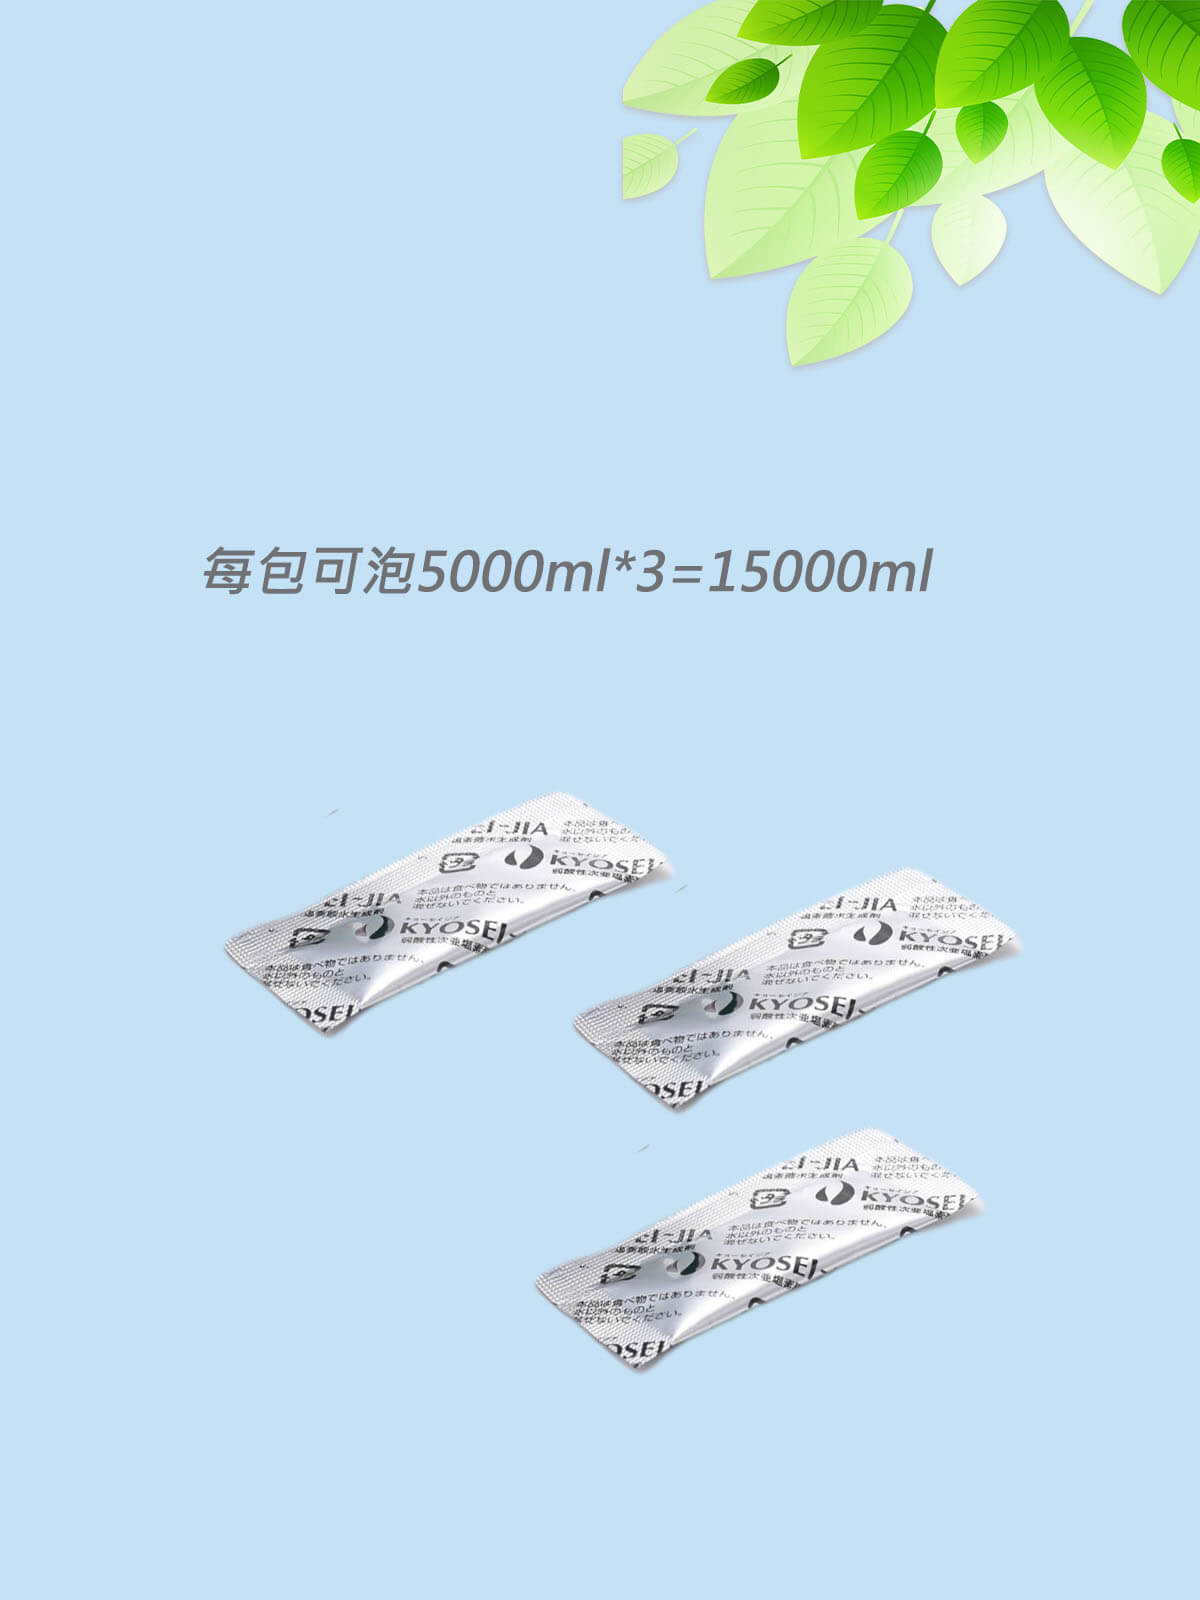 日本製KYOSEI-JIA微酸性次氯酸水生成劑3包*5000ml=15000ml (每包可泡5000ml)